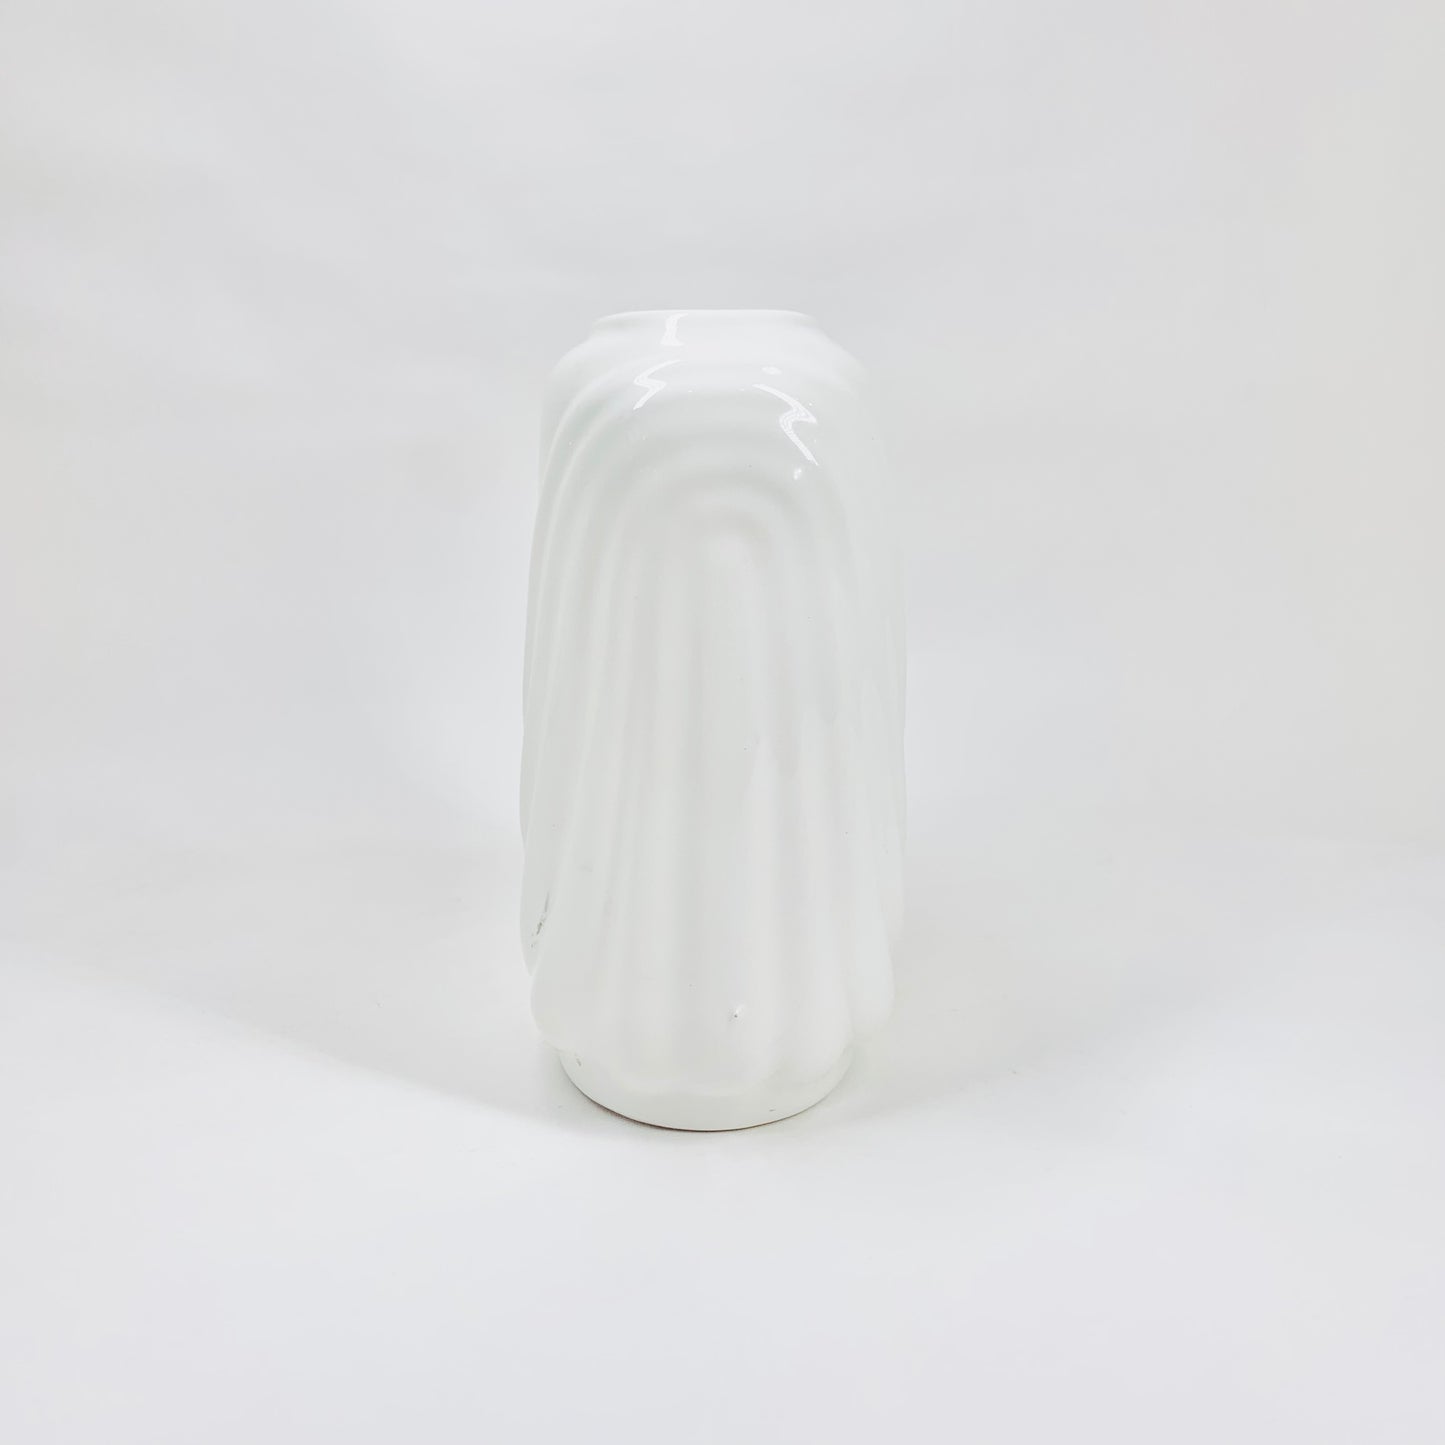 Rare 80s Japanese white porcelain vase